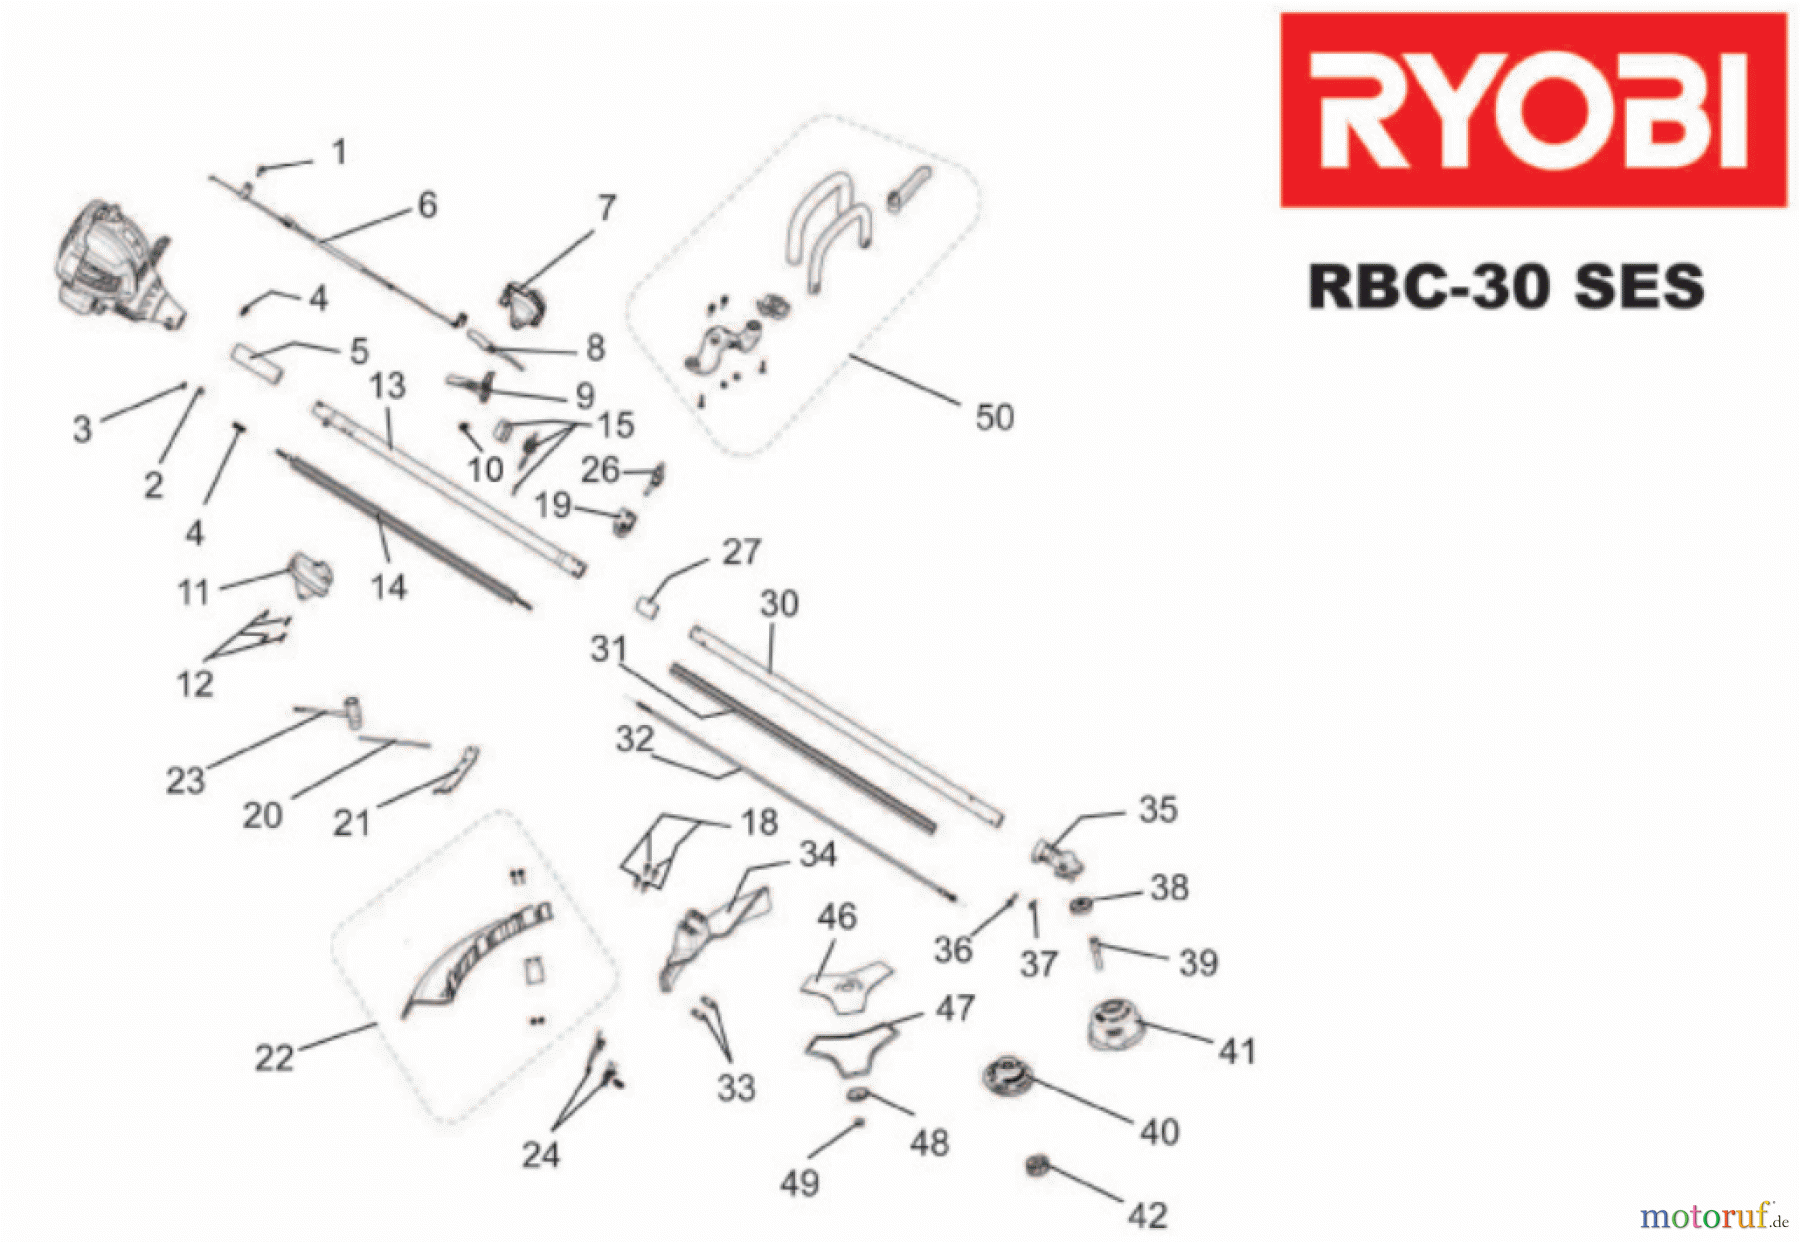  Ryobi Sensen Freischneider Benzin RBC30SES Seite 1